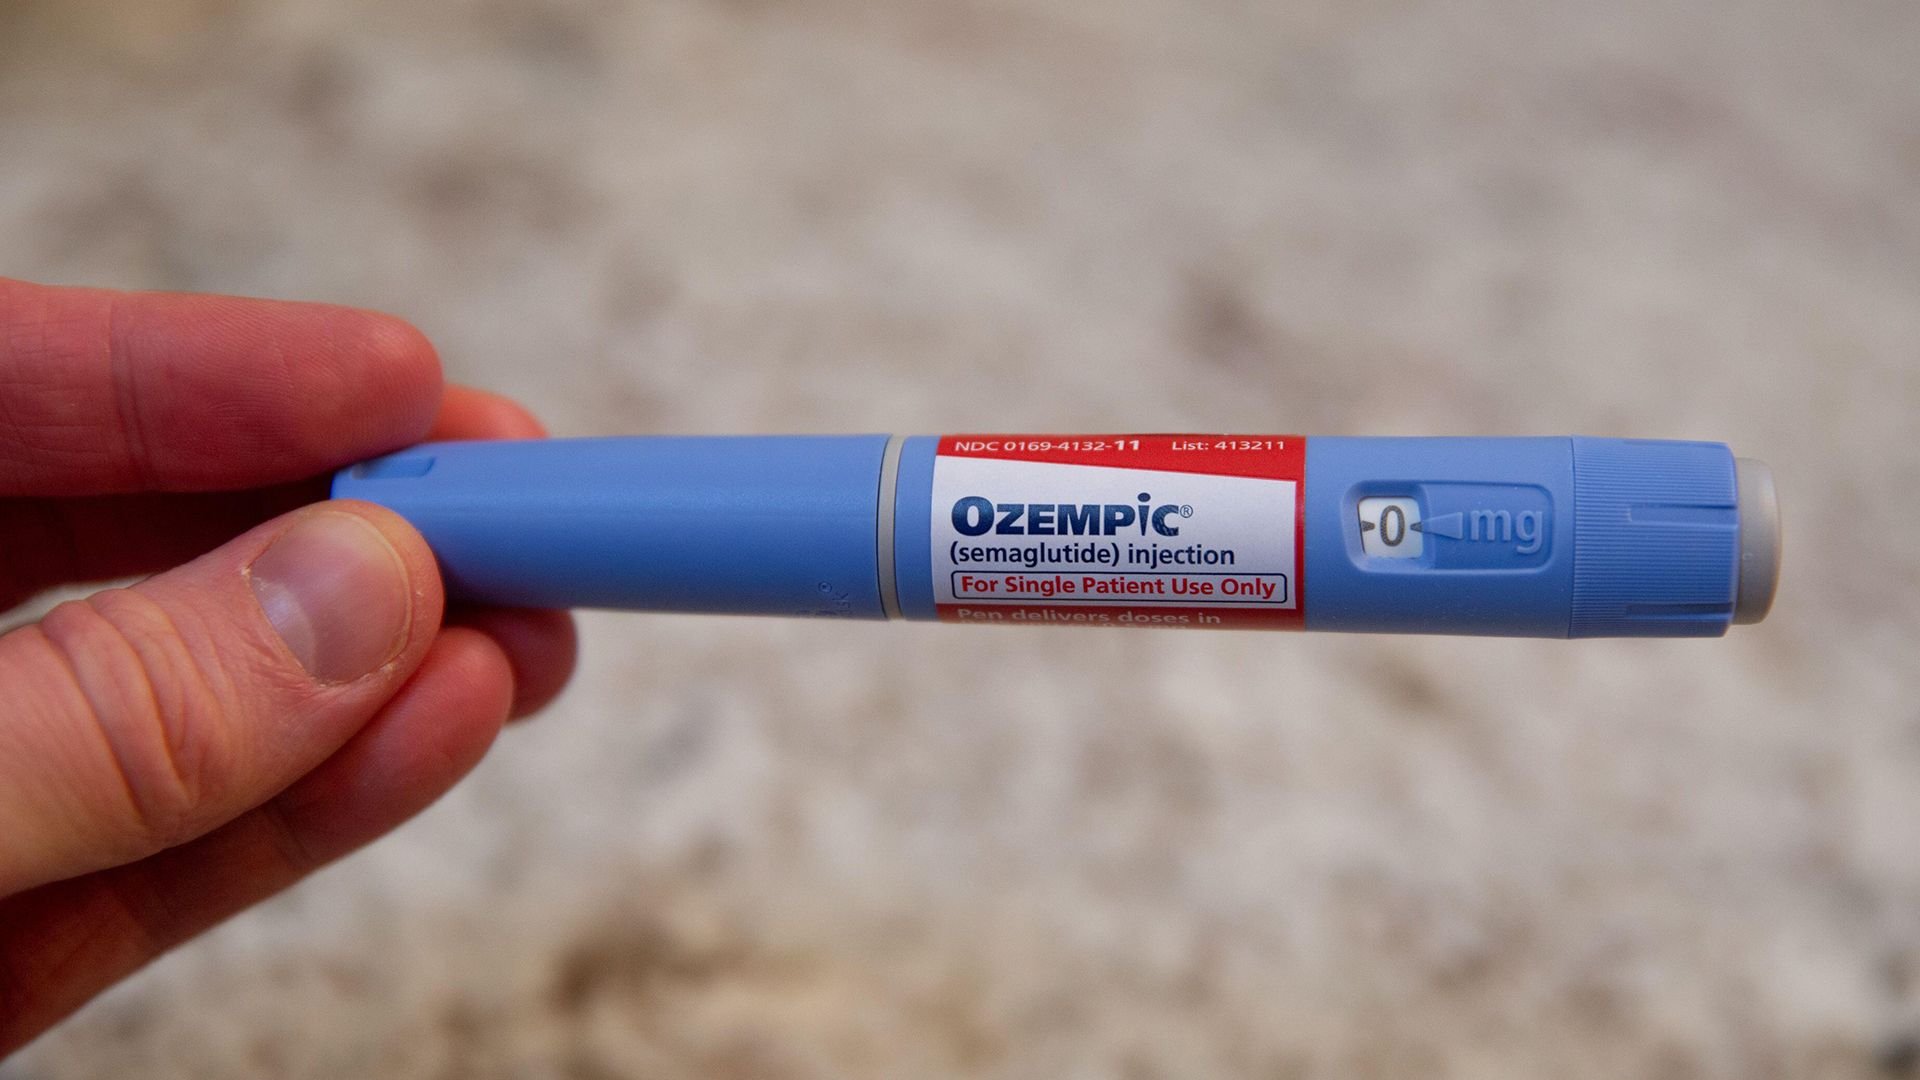  După ce Ozempic a fost folosit pentru slăbit, medicamentele antidiabetice ar putea fi folosite şi pentru Alzheimer